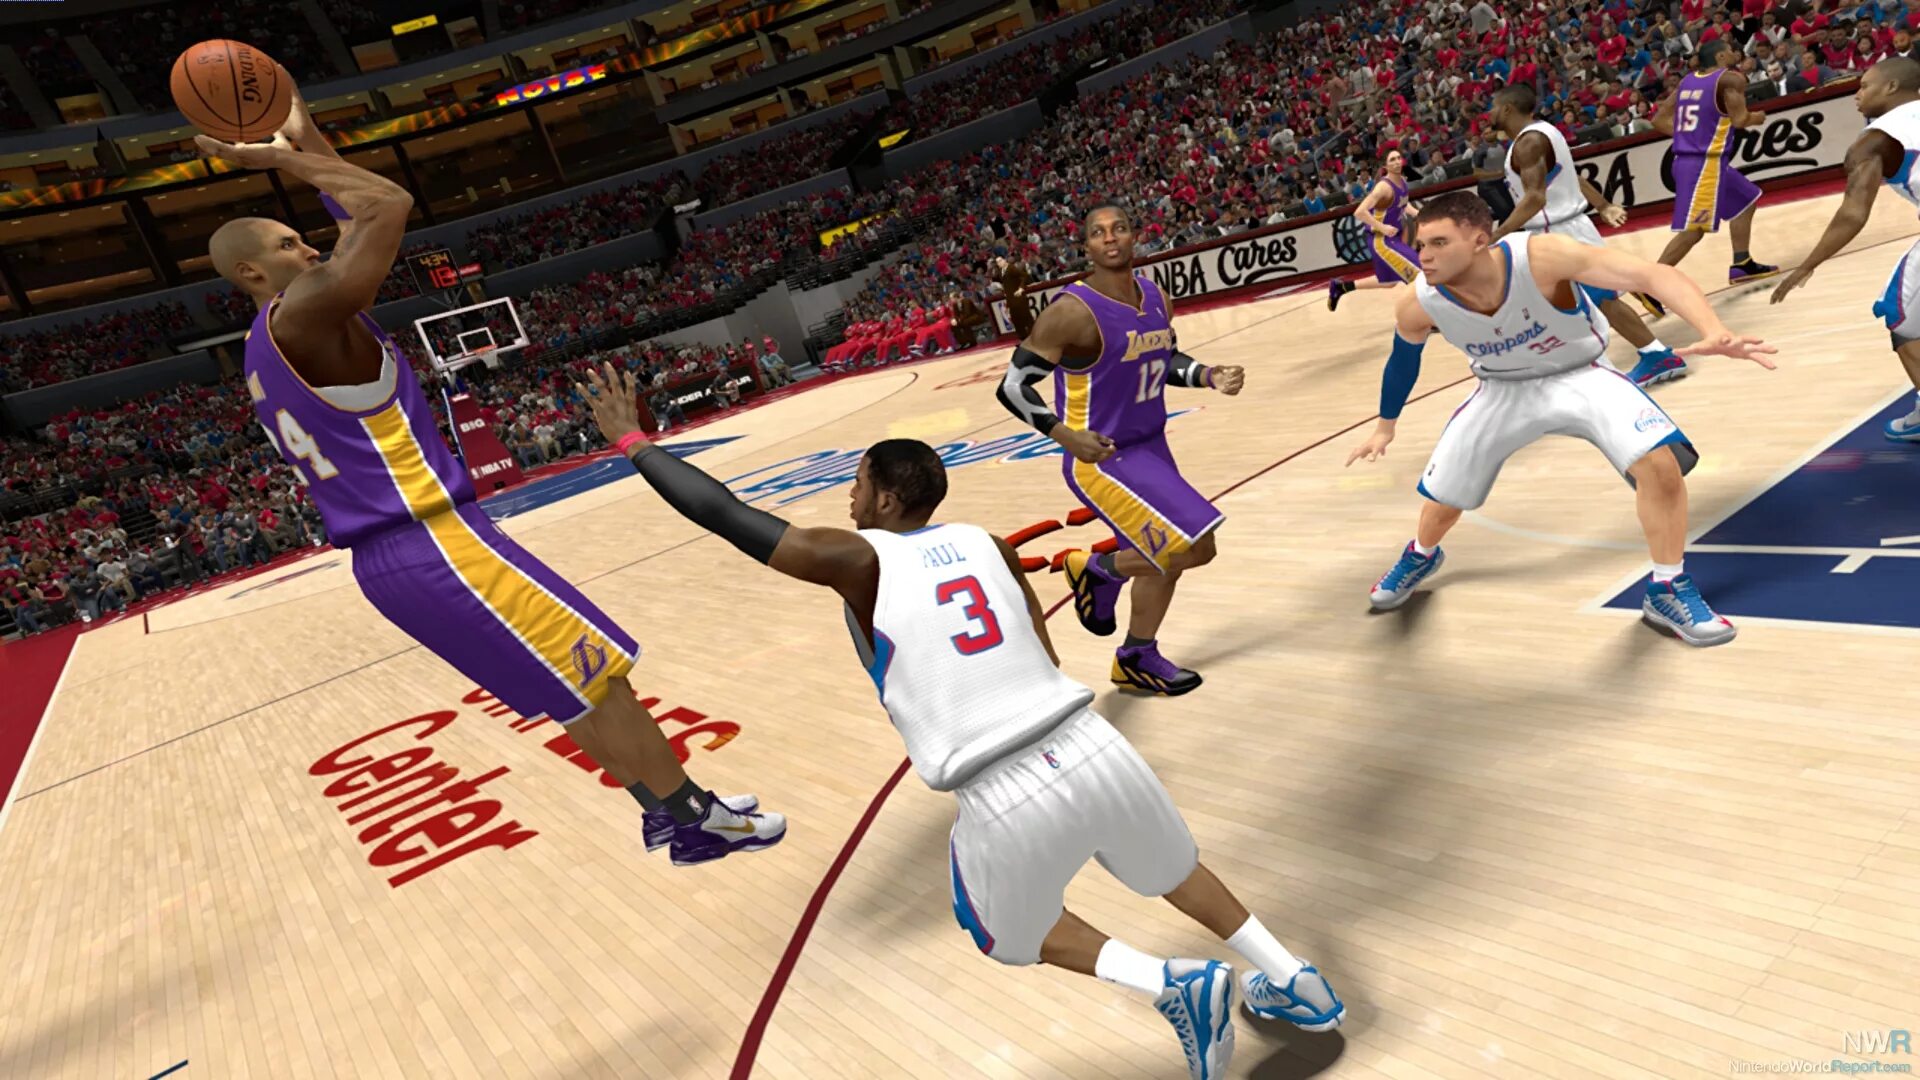 Top game win. NBA 2k13. NBA 2k13 (PSP). NBA 2k игра. NBA 2k13 Wii u.